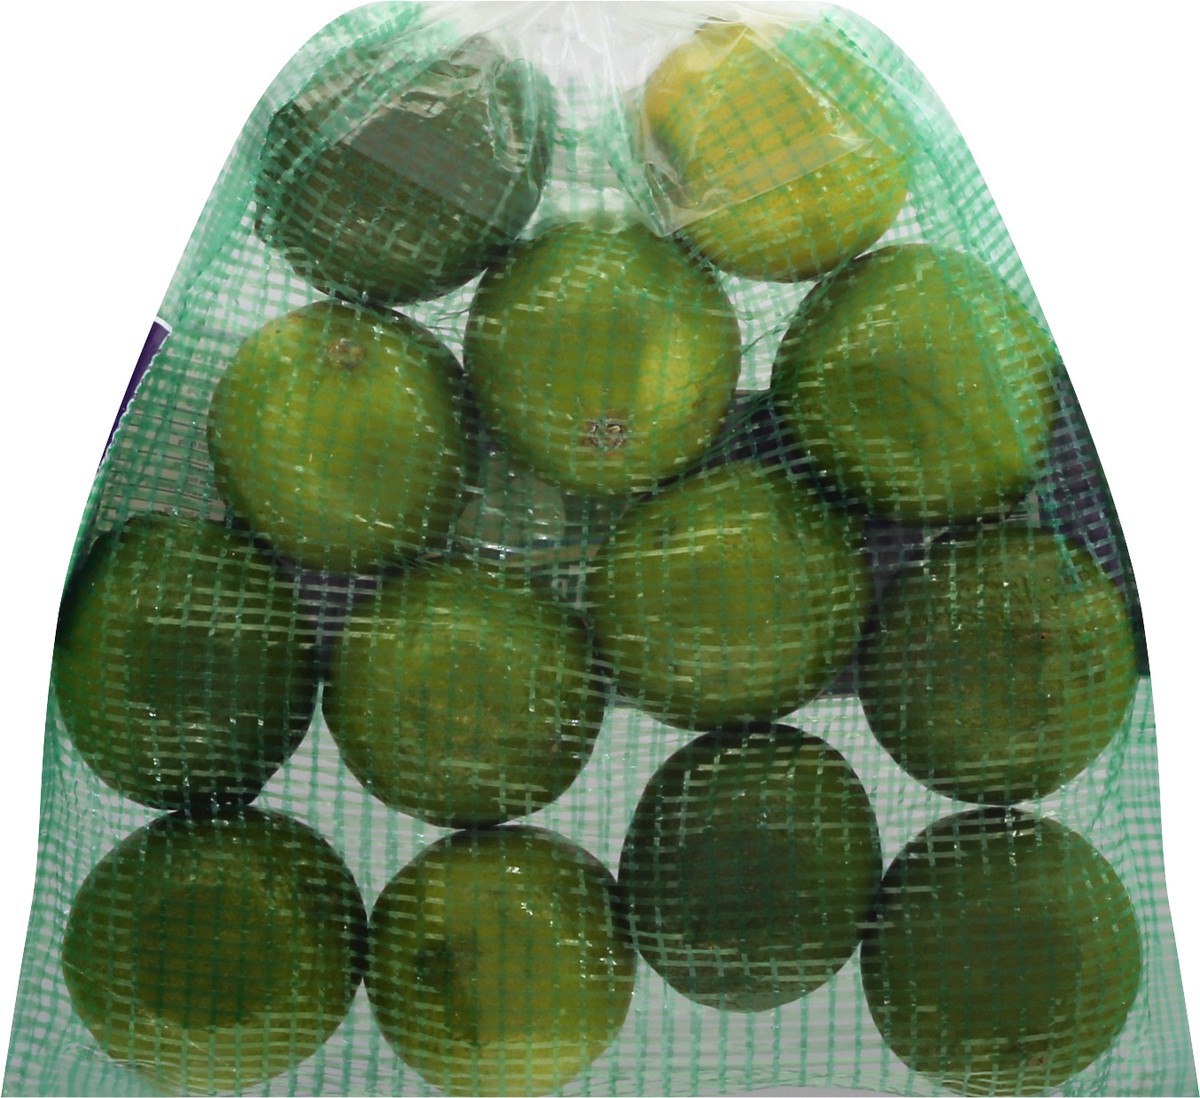 slide 9 of 12, Coast Tropical Limes, 2 lb, 2 lb